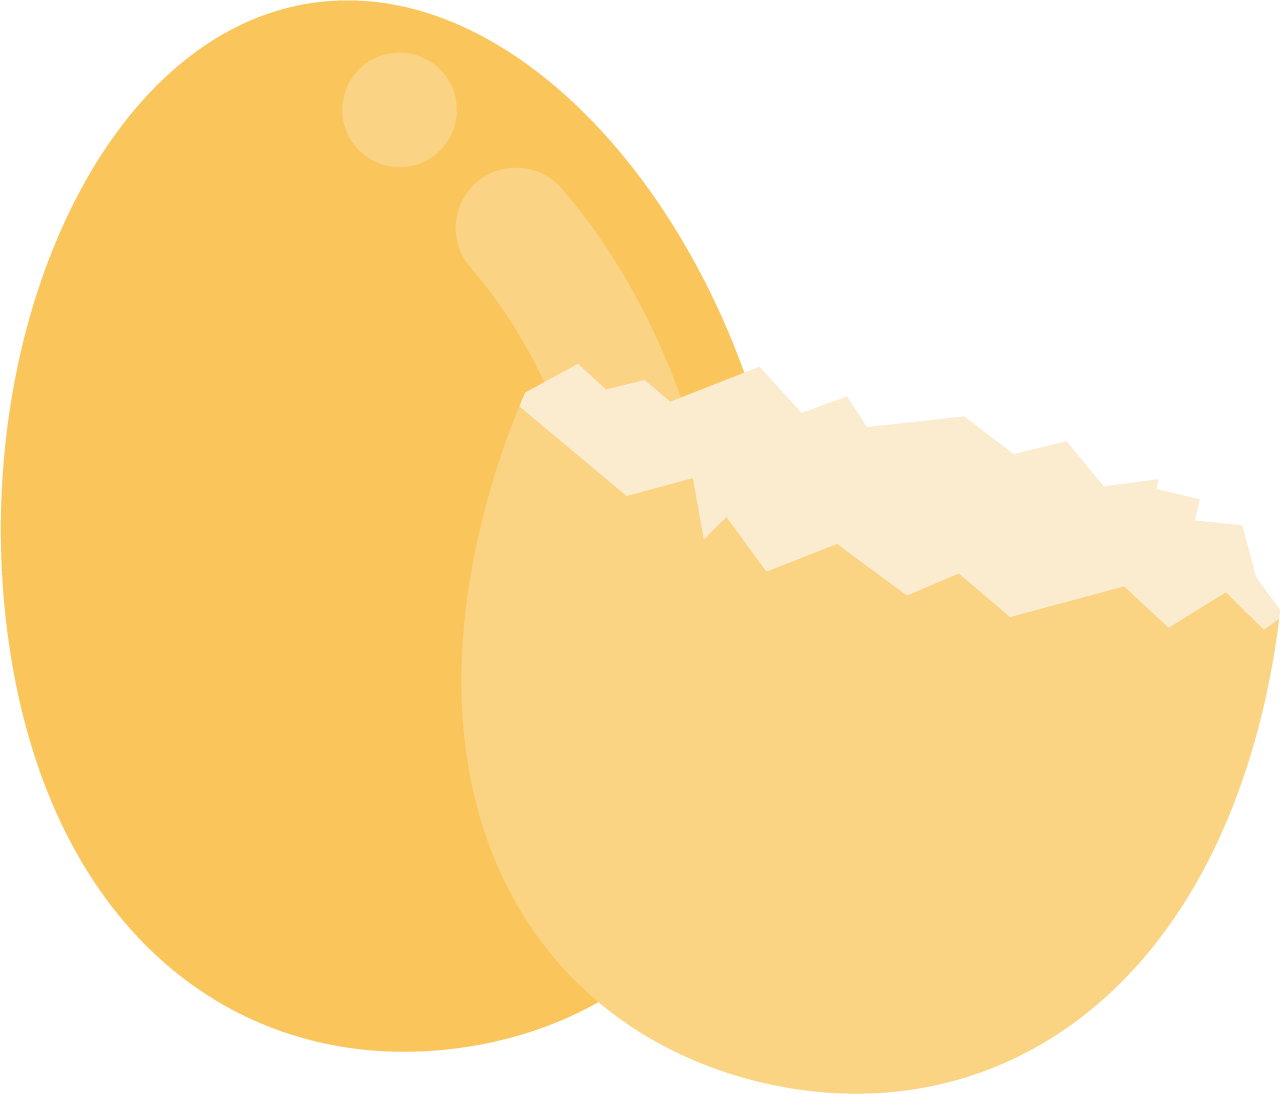 Fried Egg Breakfast Chicken Chinese Steamed Eggs - Egg (1281x1094)